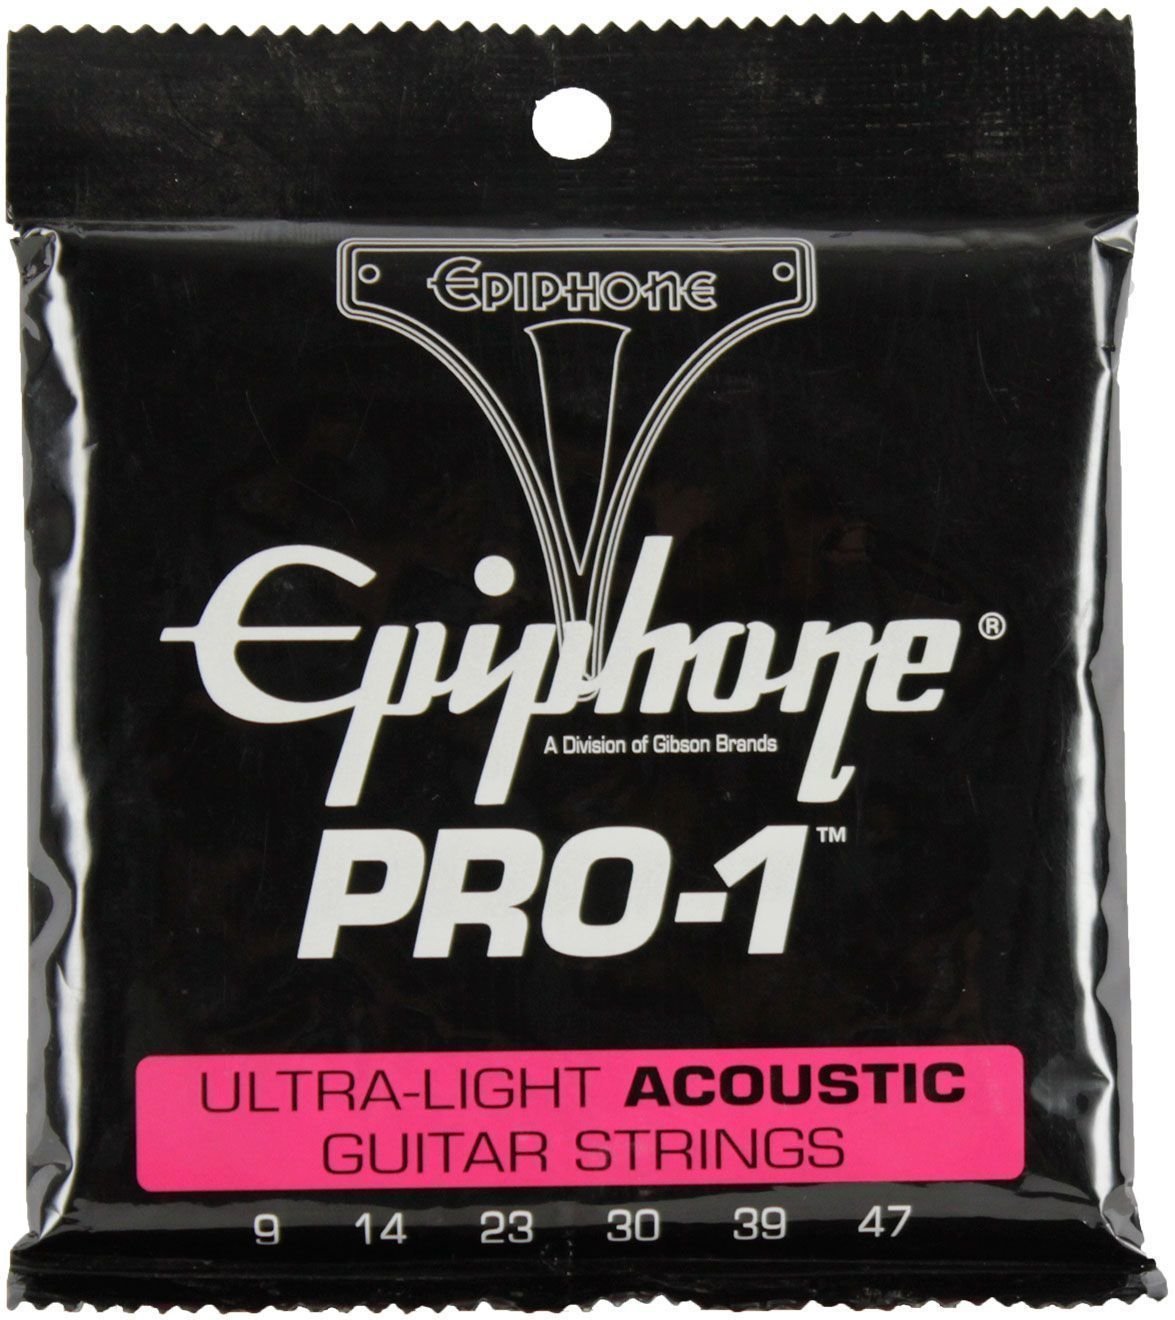 Χορδές για Ακουστική Κιθάρα Epiphone Pro-1 Ultra-Light Acoustic Strings